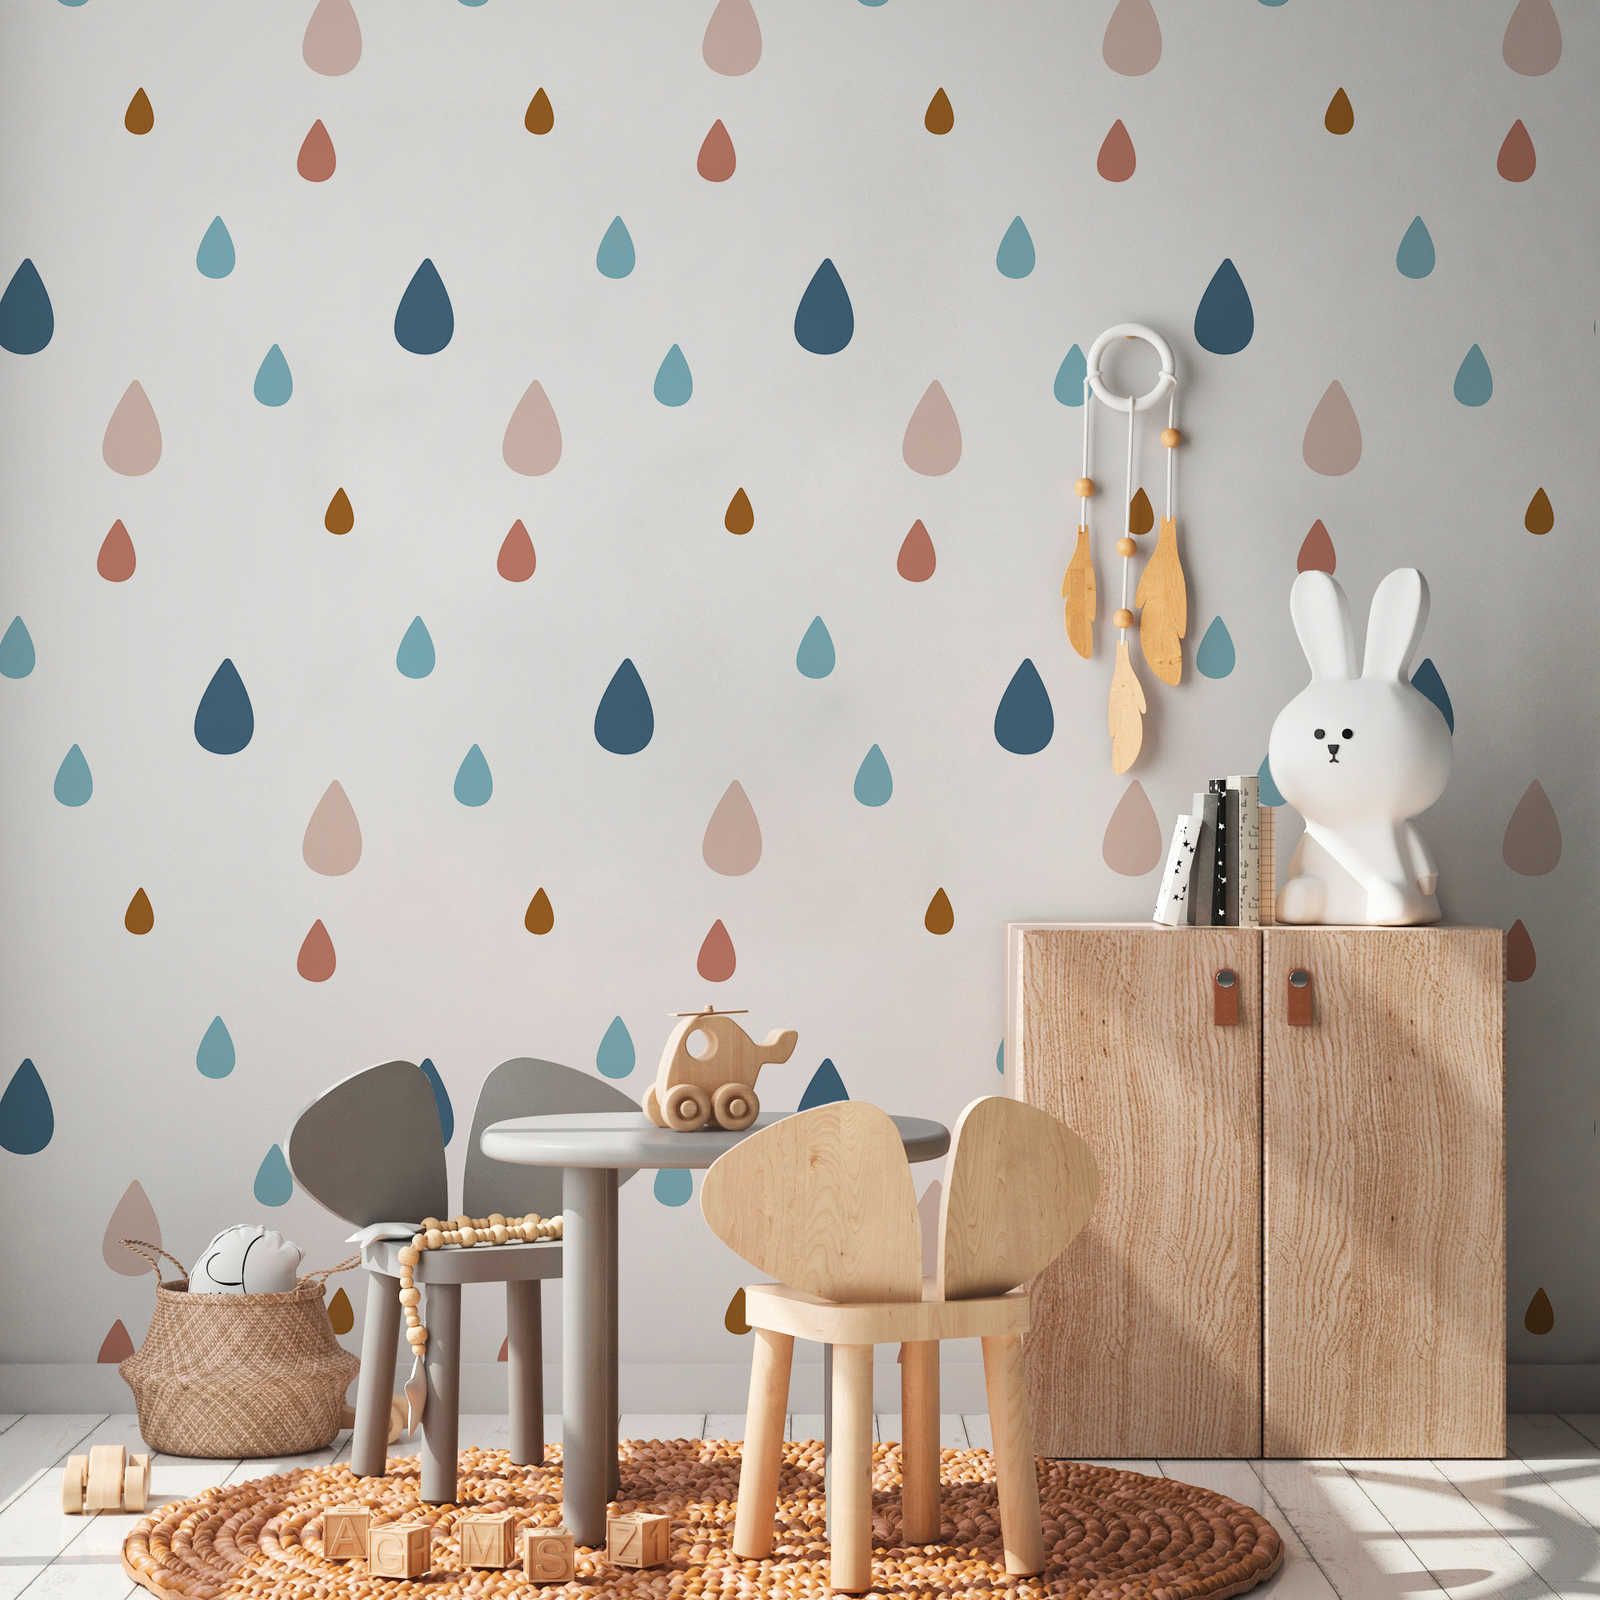 Fototapete fürs Kinderzimmer mit bunten Wassertropfen – Glattes & perlmutt-schimmerndes Vlies
